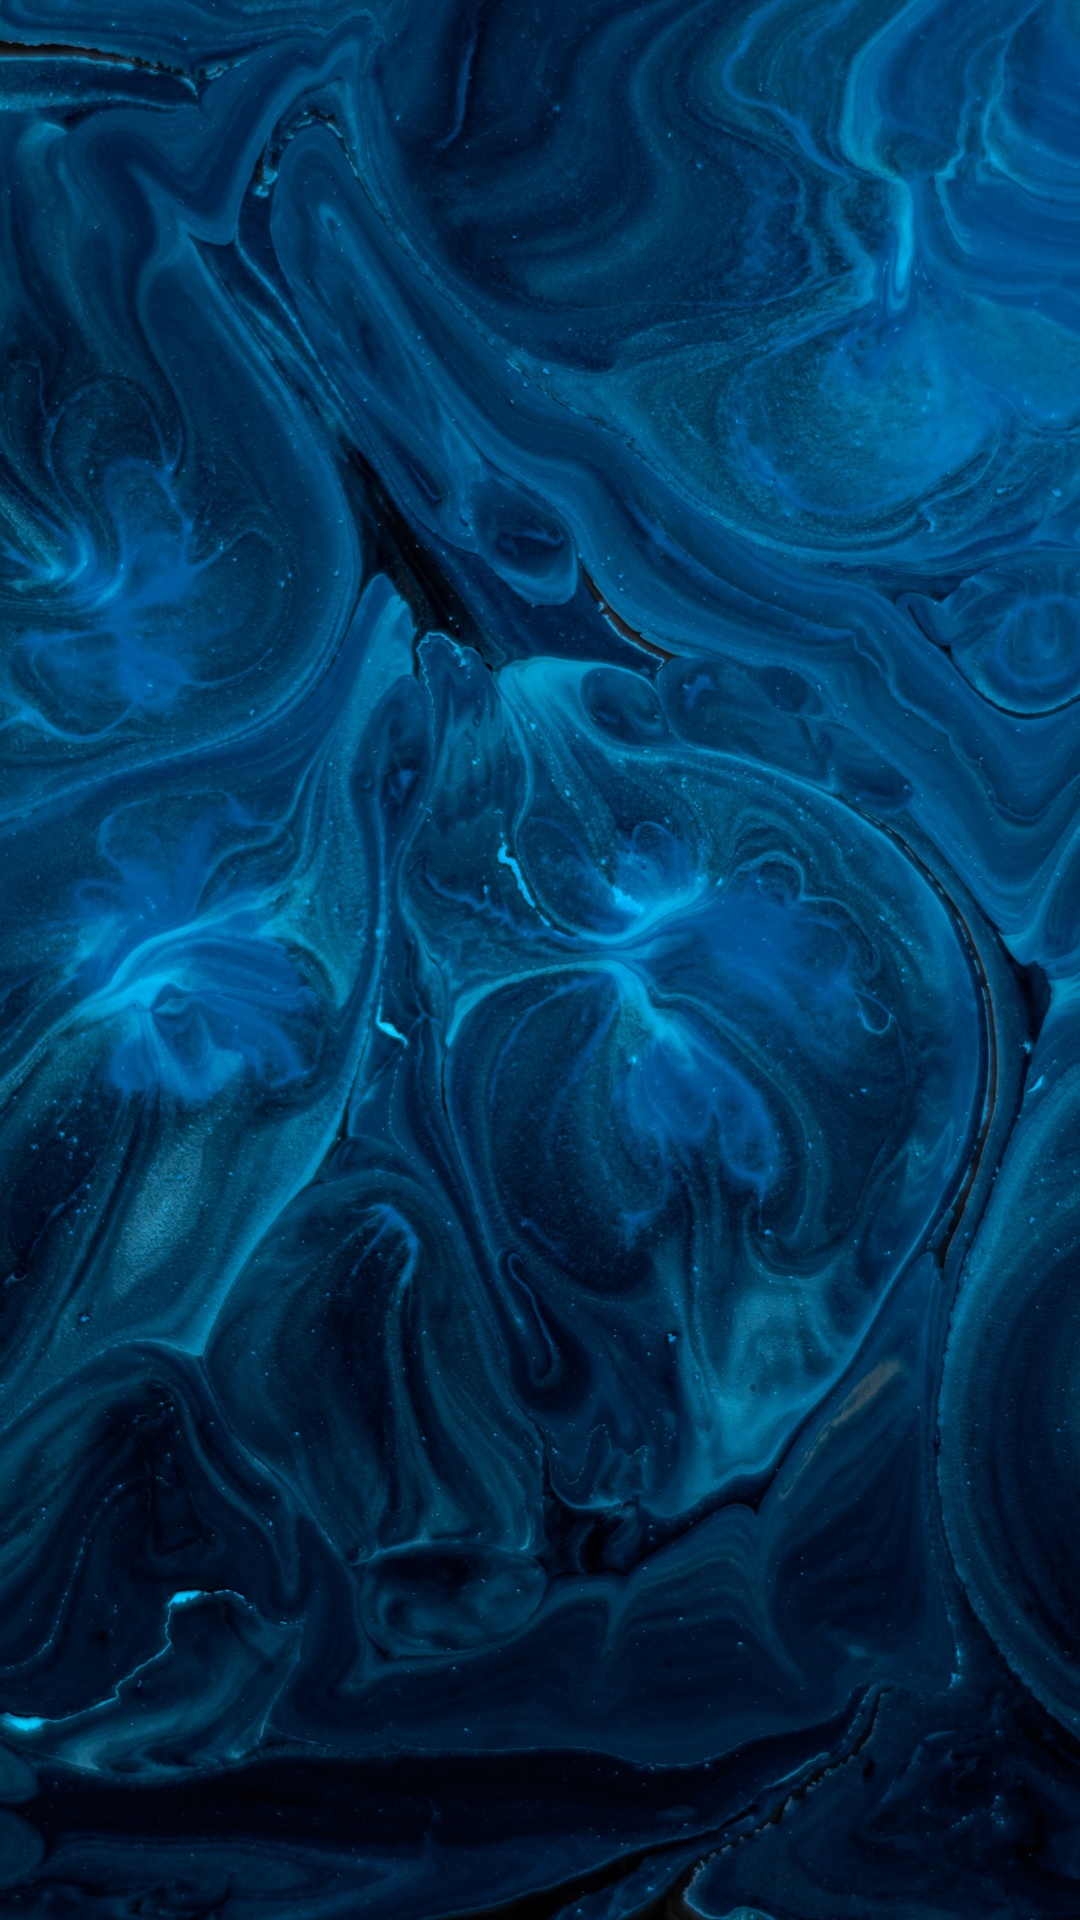 Pintura Abstracta Azul y Negra. Wallpaper in 1080x1920 Resolution